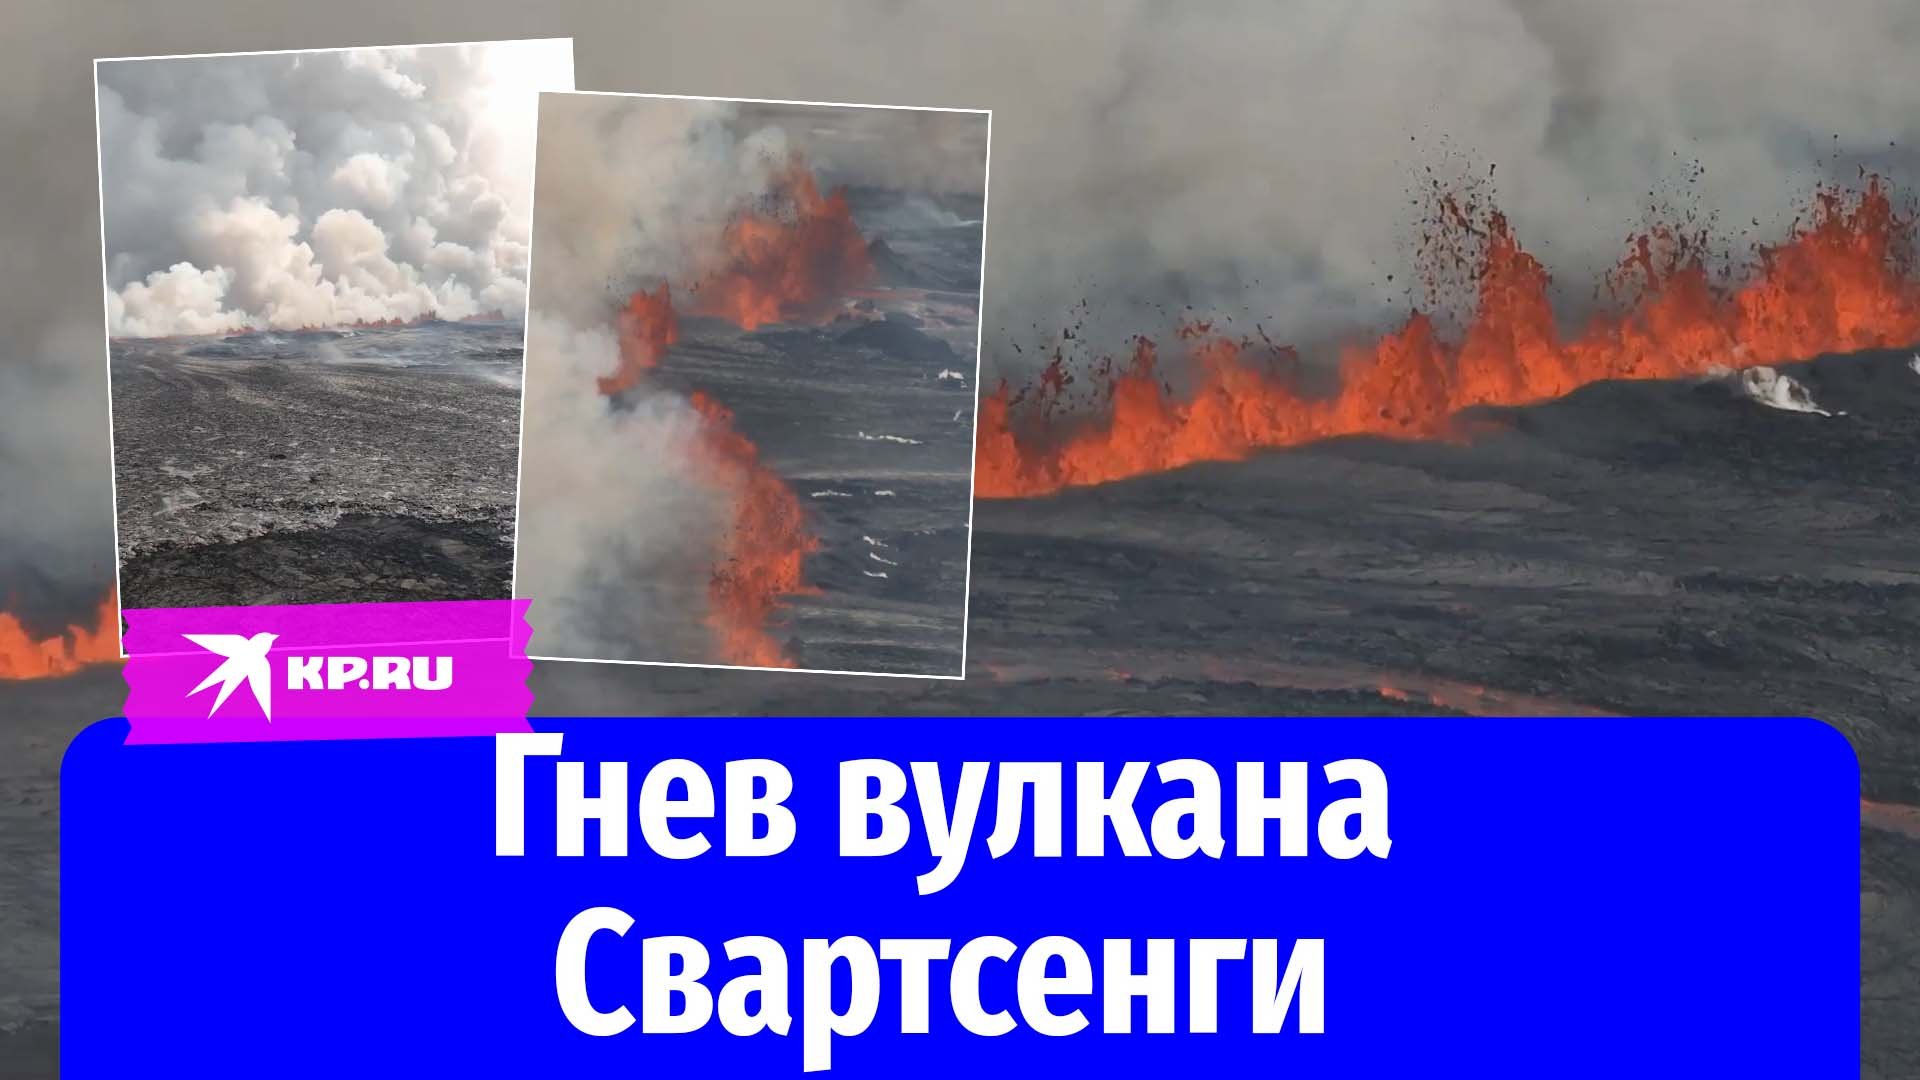 Вулкан Свартсенги в Исландии снова фонтанирует раскалённой лавой